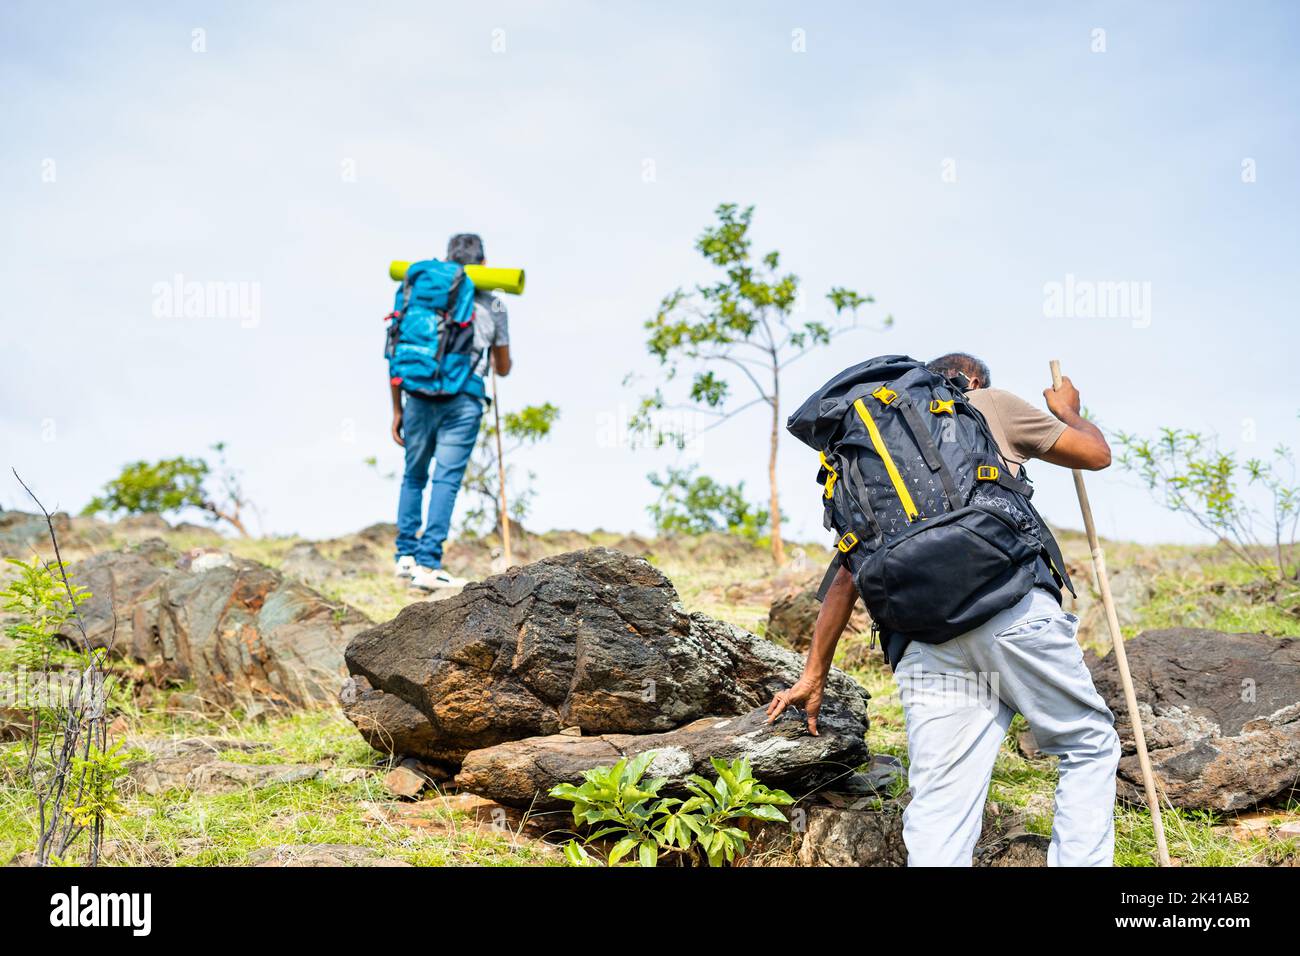 Rückansicht Tracking-Aufnahme von Wanderern mittleren Alters beim Bergsteigen oder Bergsteigen - Konzept für Abenteuer, Freizeitaktivitäten und Trekking. Stockfoto